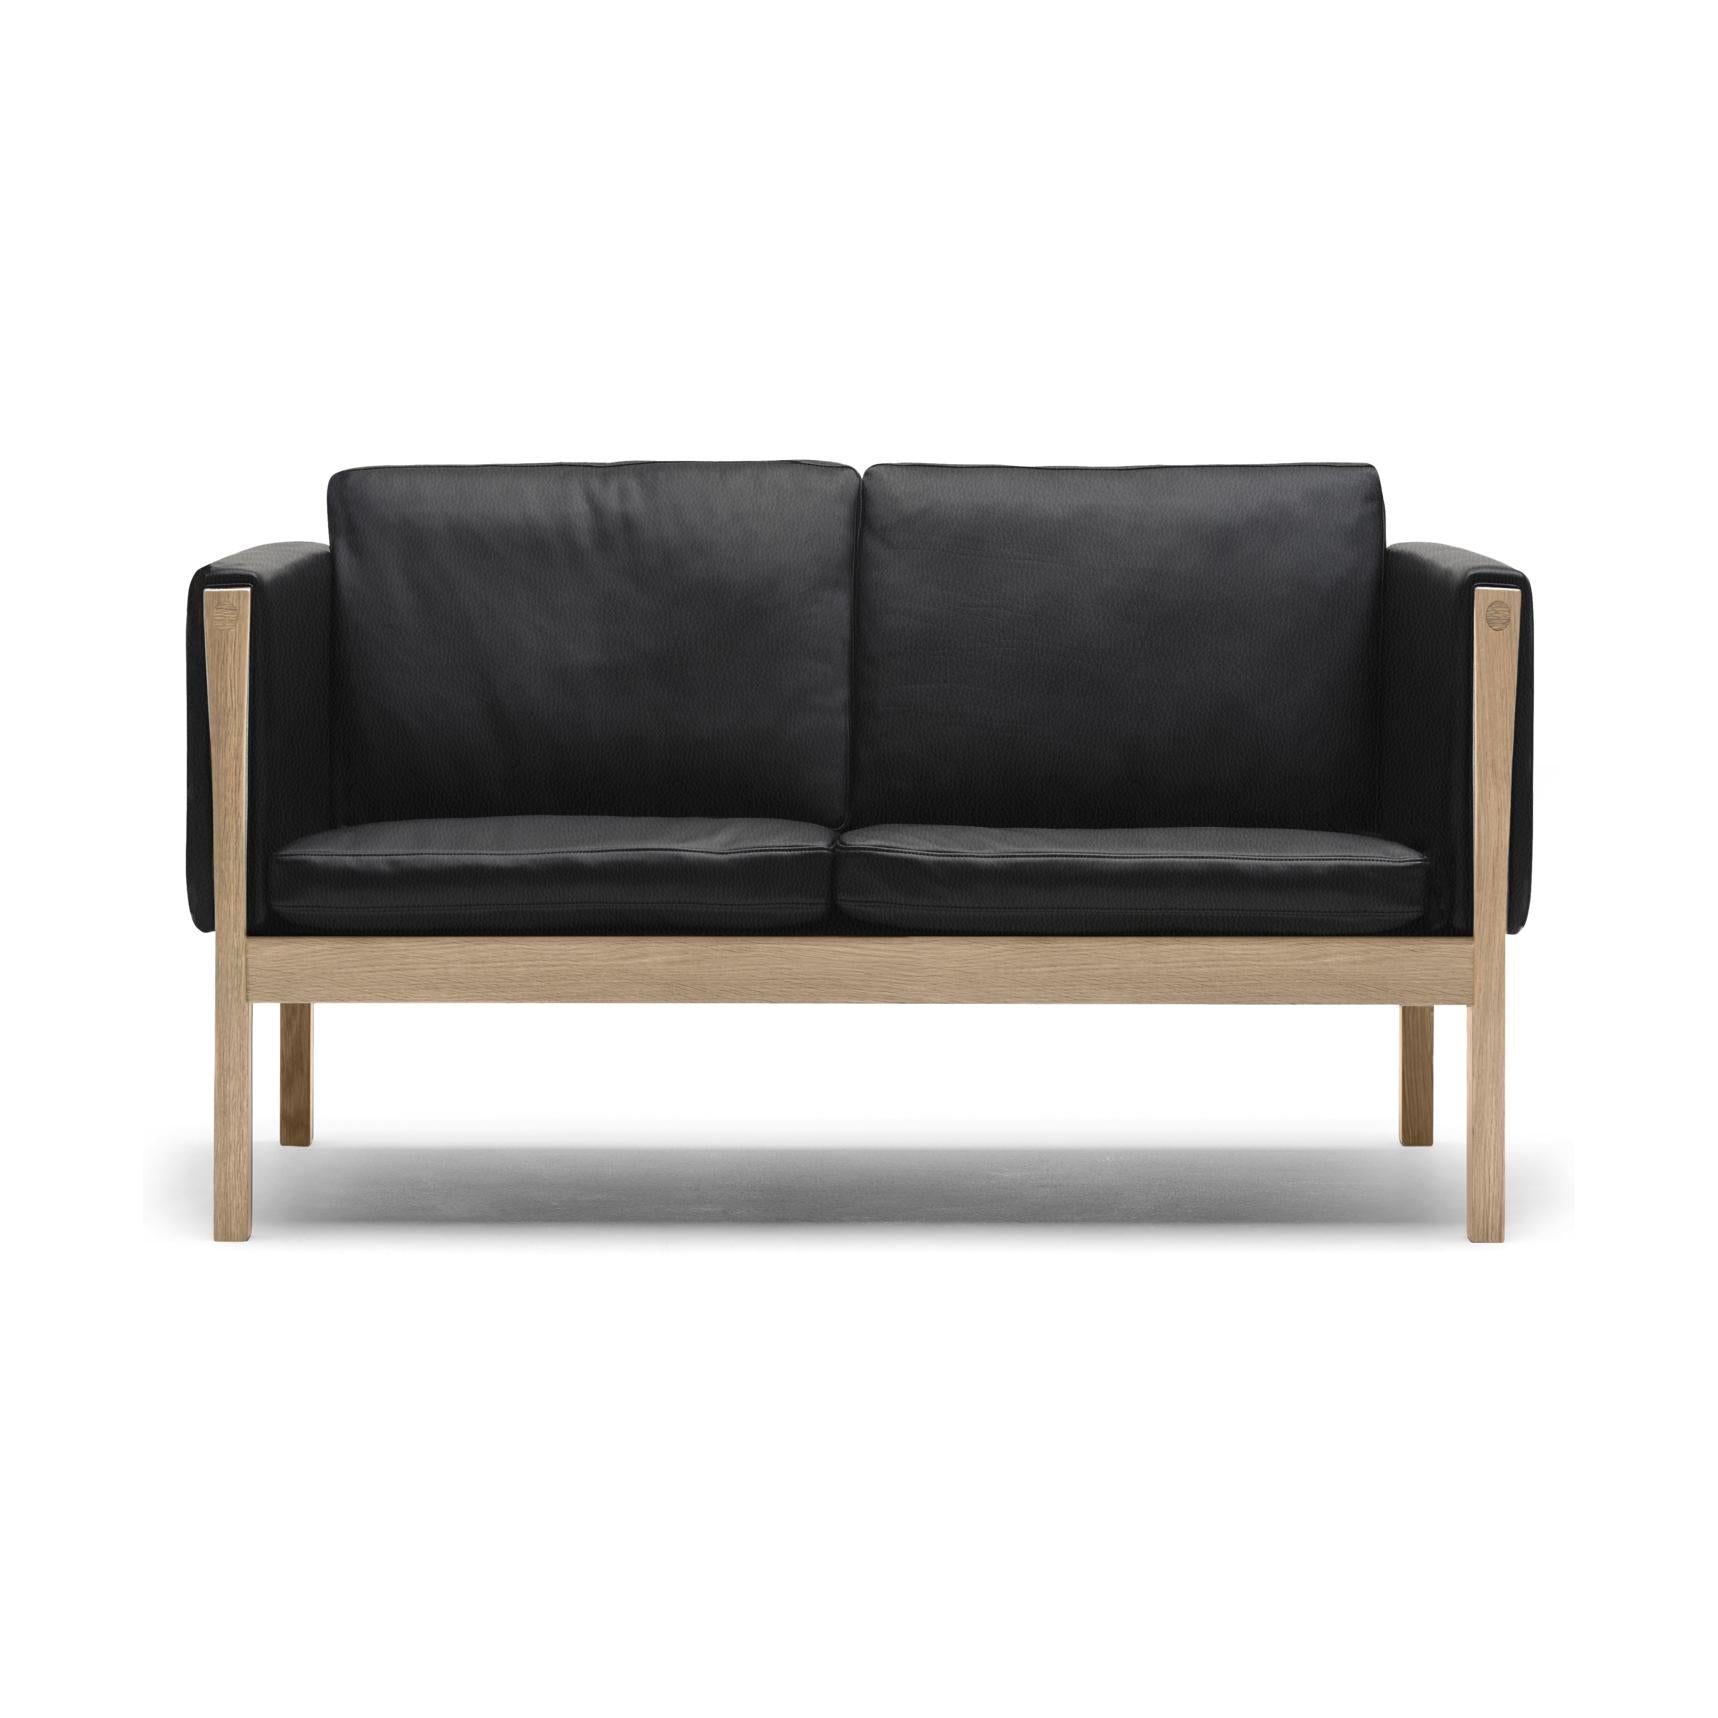 Carl Hansen CH162 -sohva, öljytty tammi/musta nahka